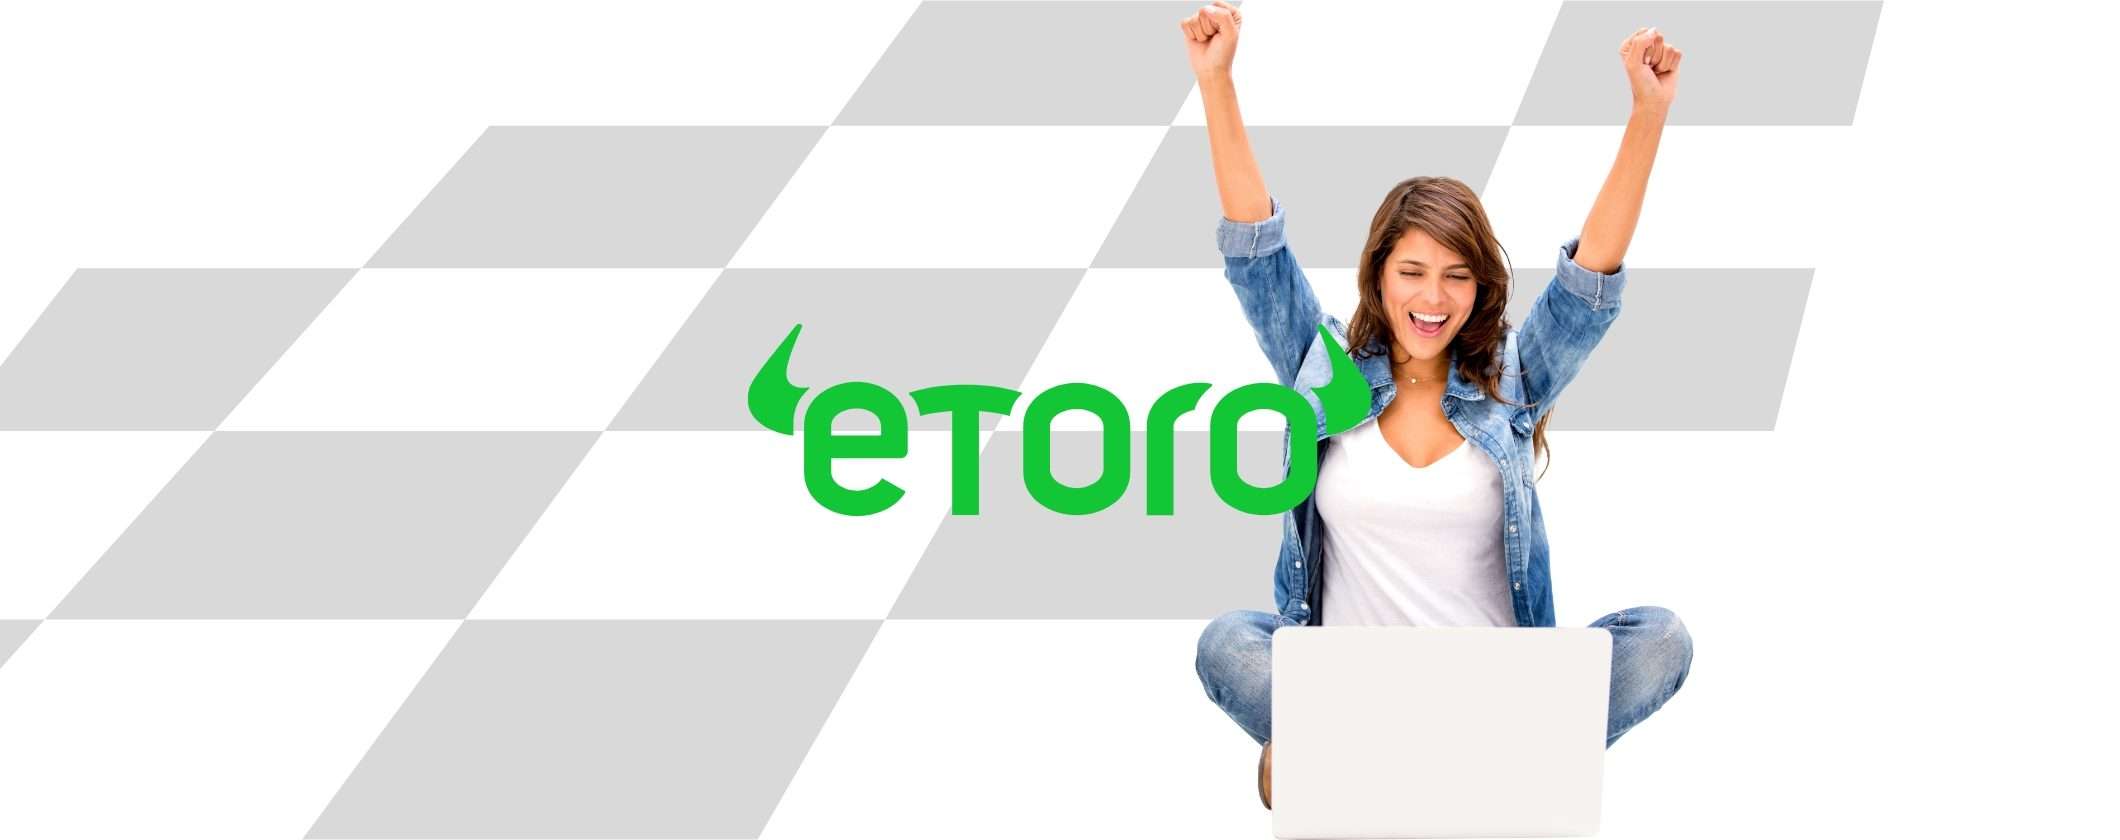 eToro: investi in CFD sfruttando la saggezza di 30 milioni di utenti